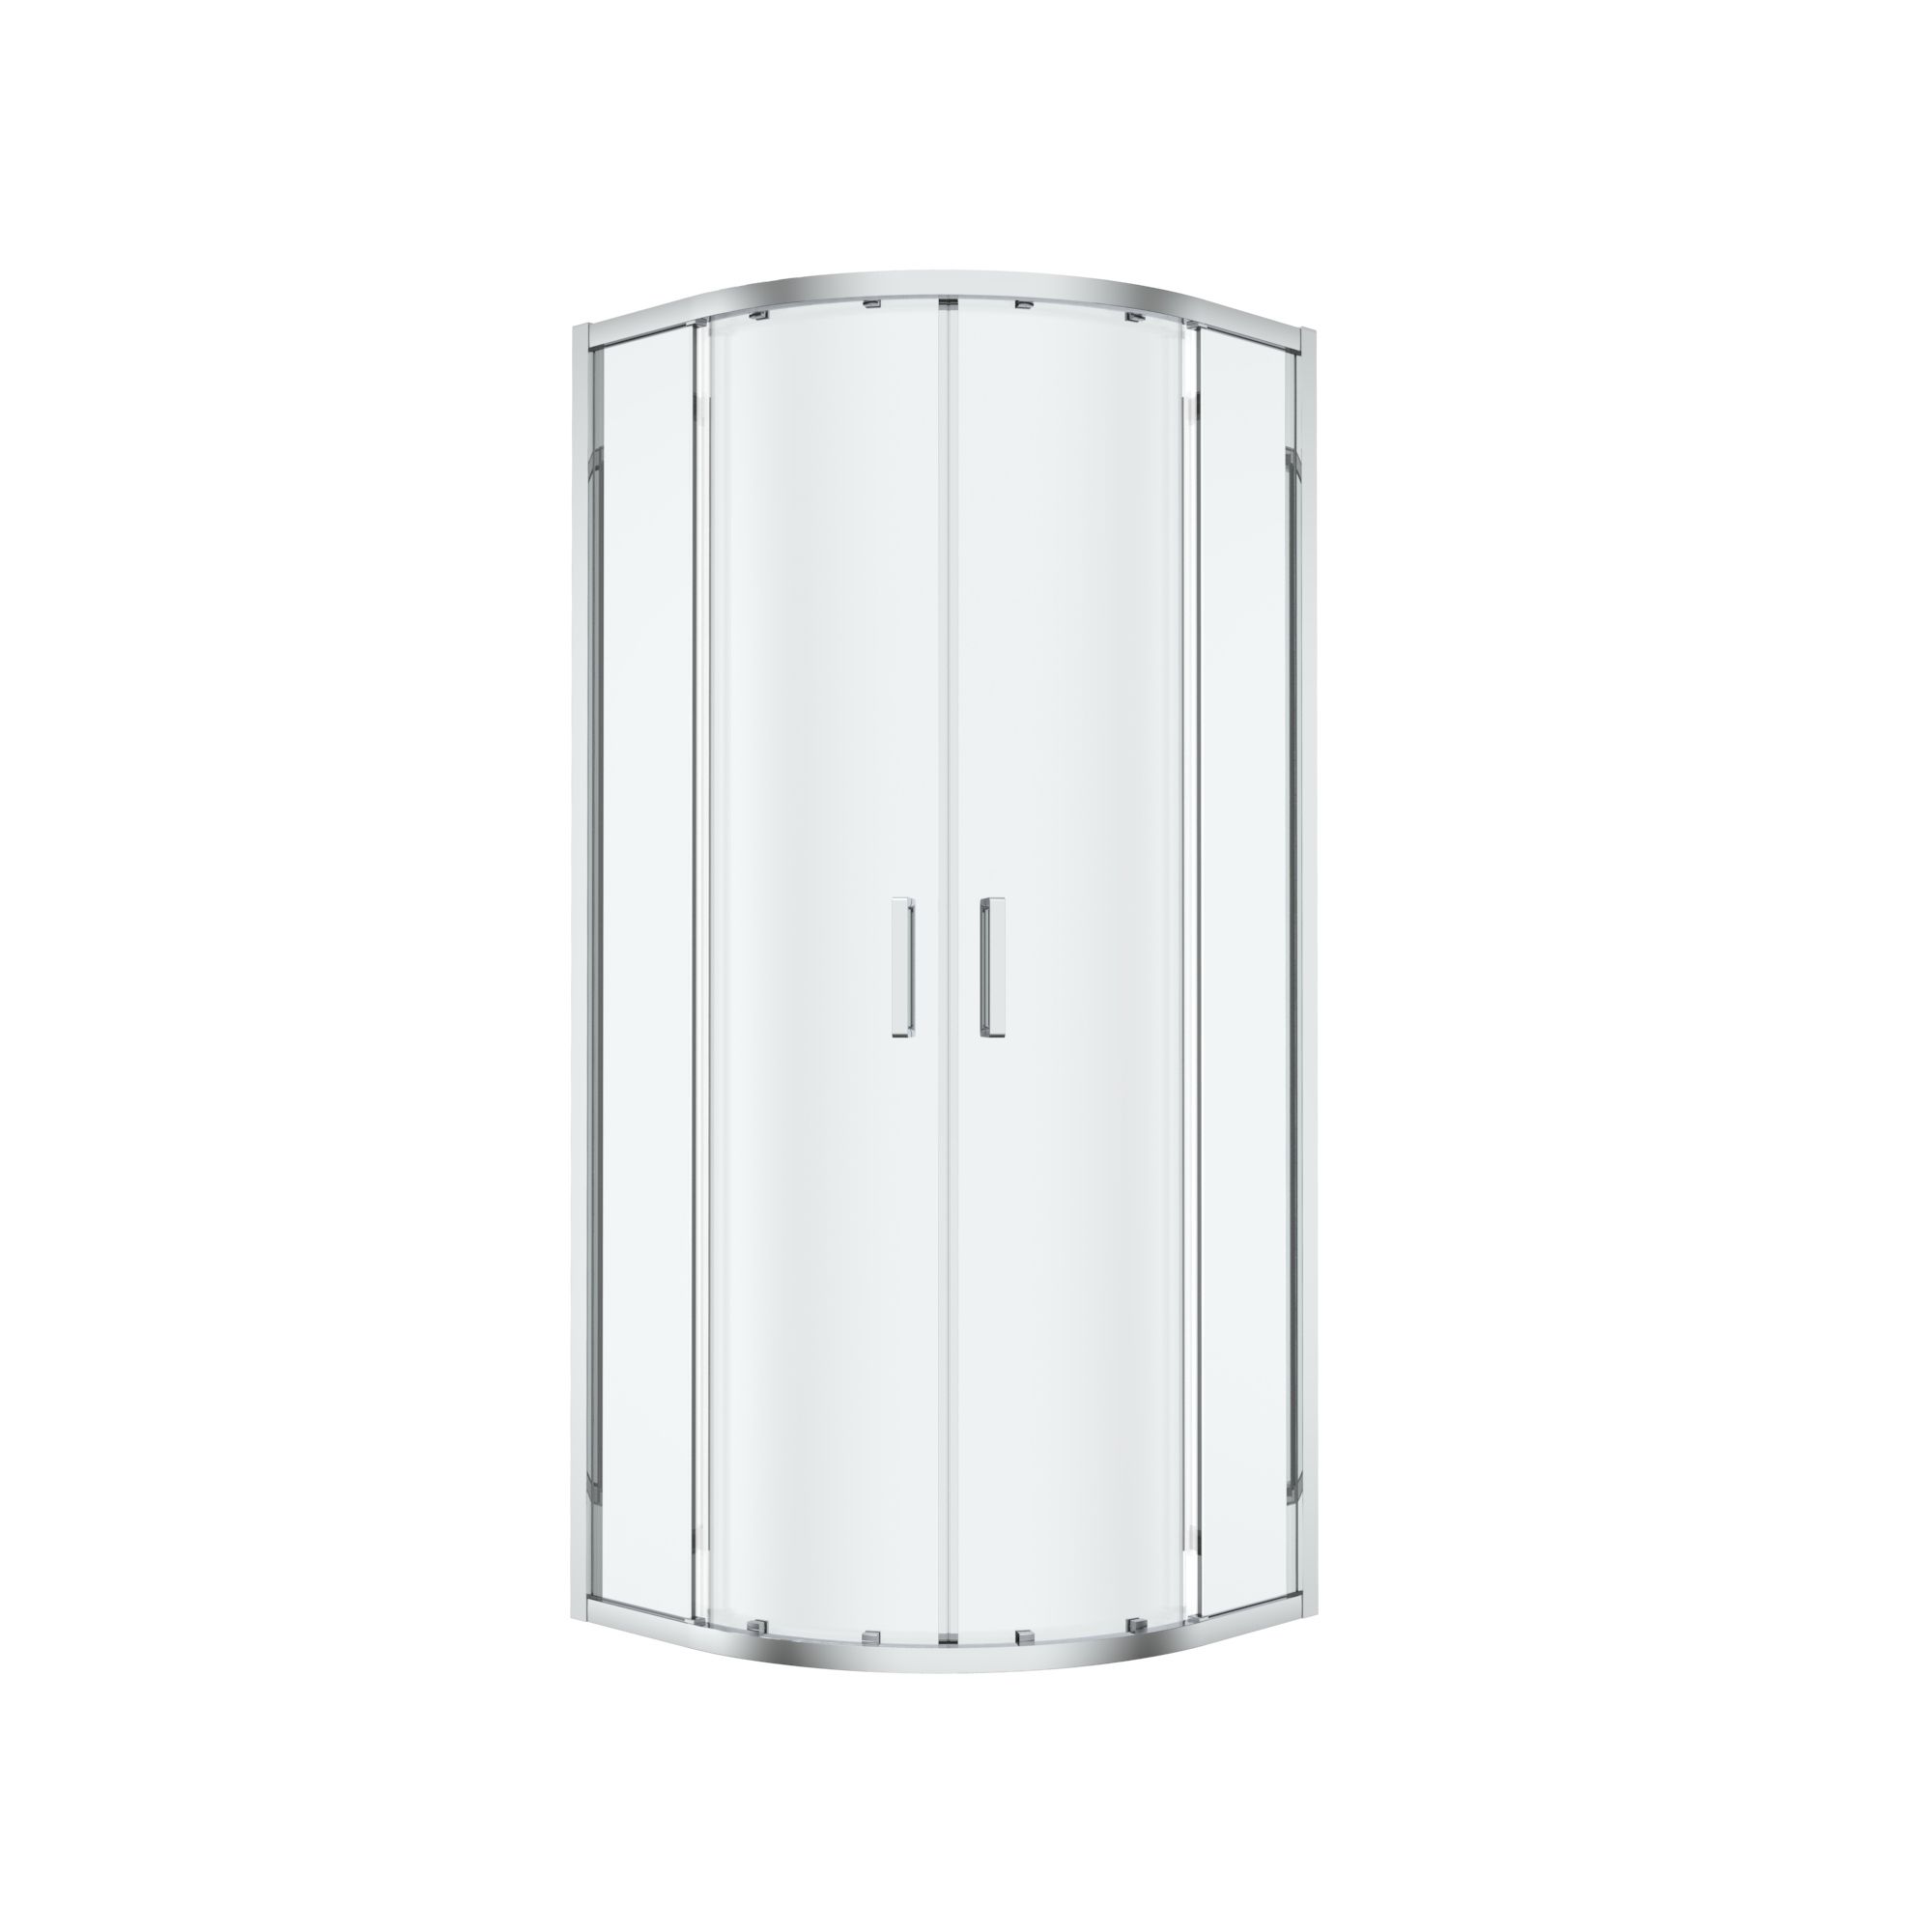 GoodHome Ledava Clear glass Chrome effect Quadrant Shower enclosure - Corner entry double sliding door (W)80cm (D)80cm